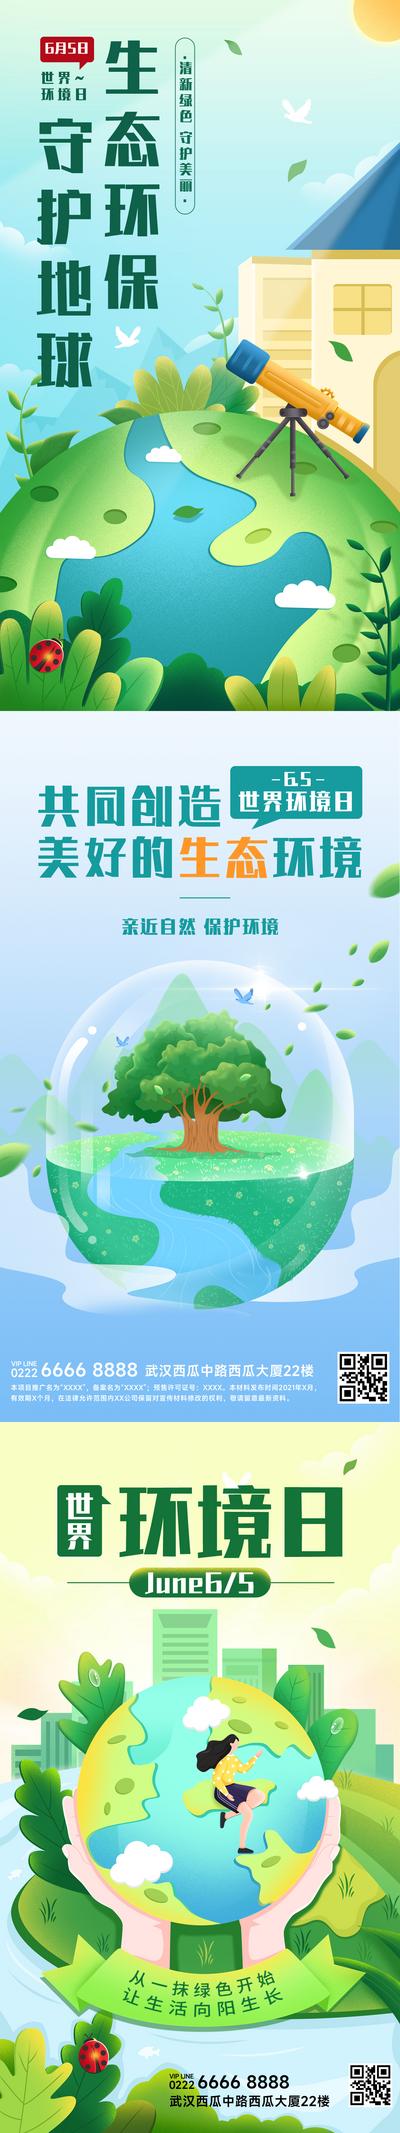 南门网 世界环境日节日宣传插画手机海报